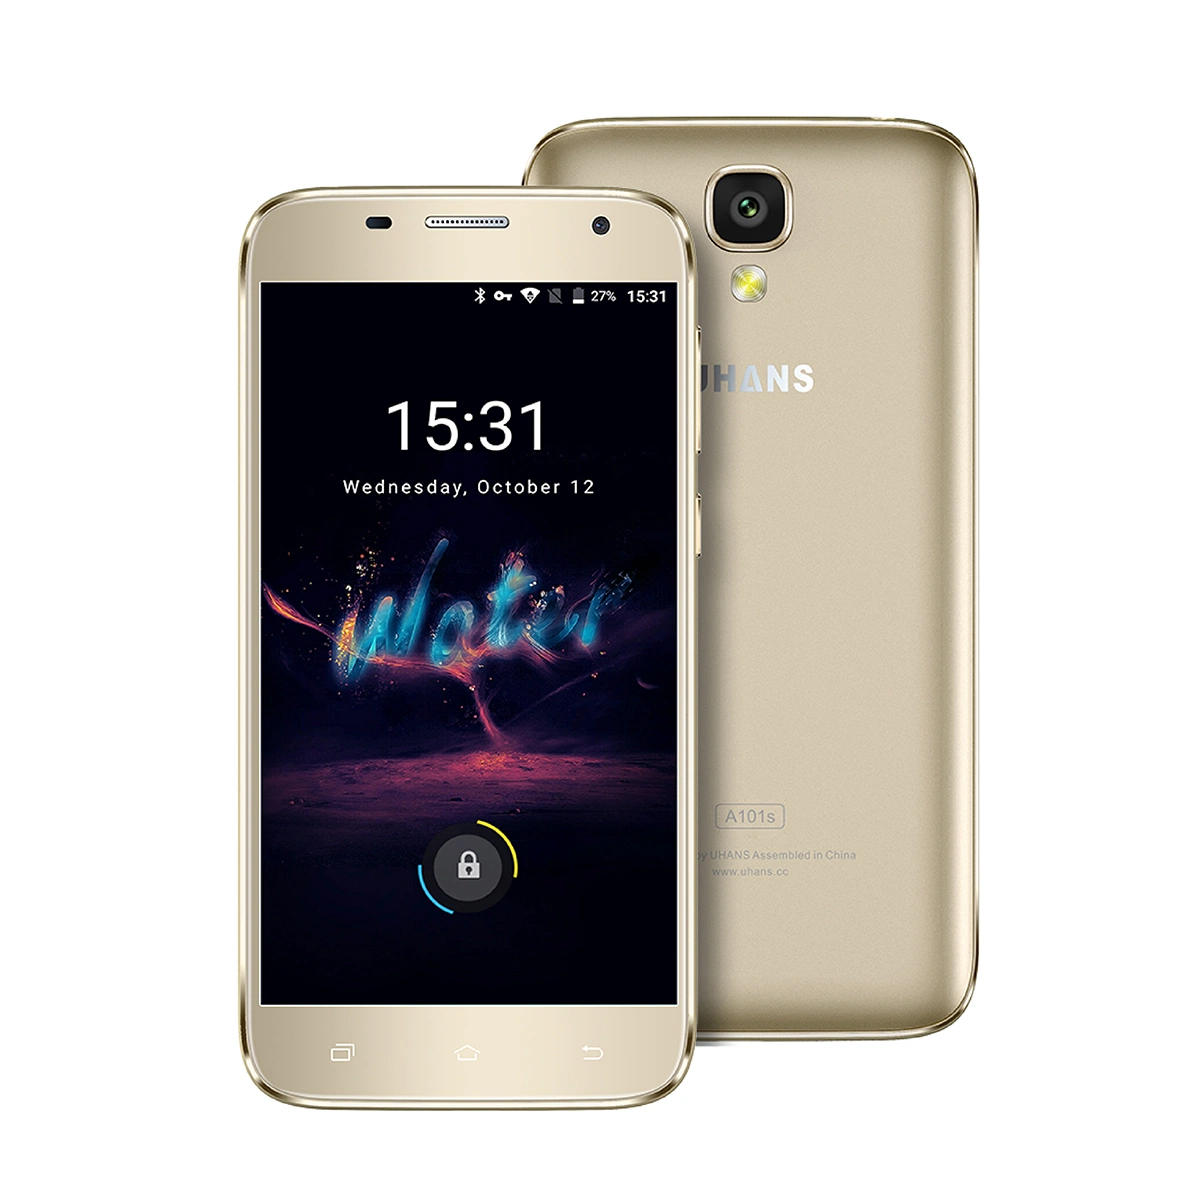 Banheira de venda da marca original Uhans China A101s Smart Phone